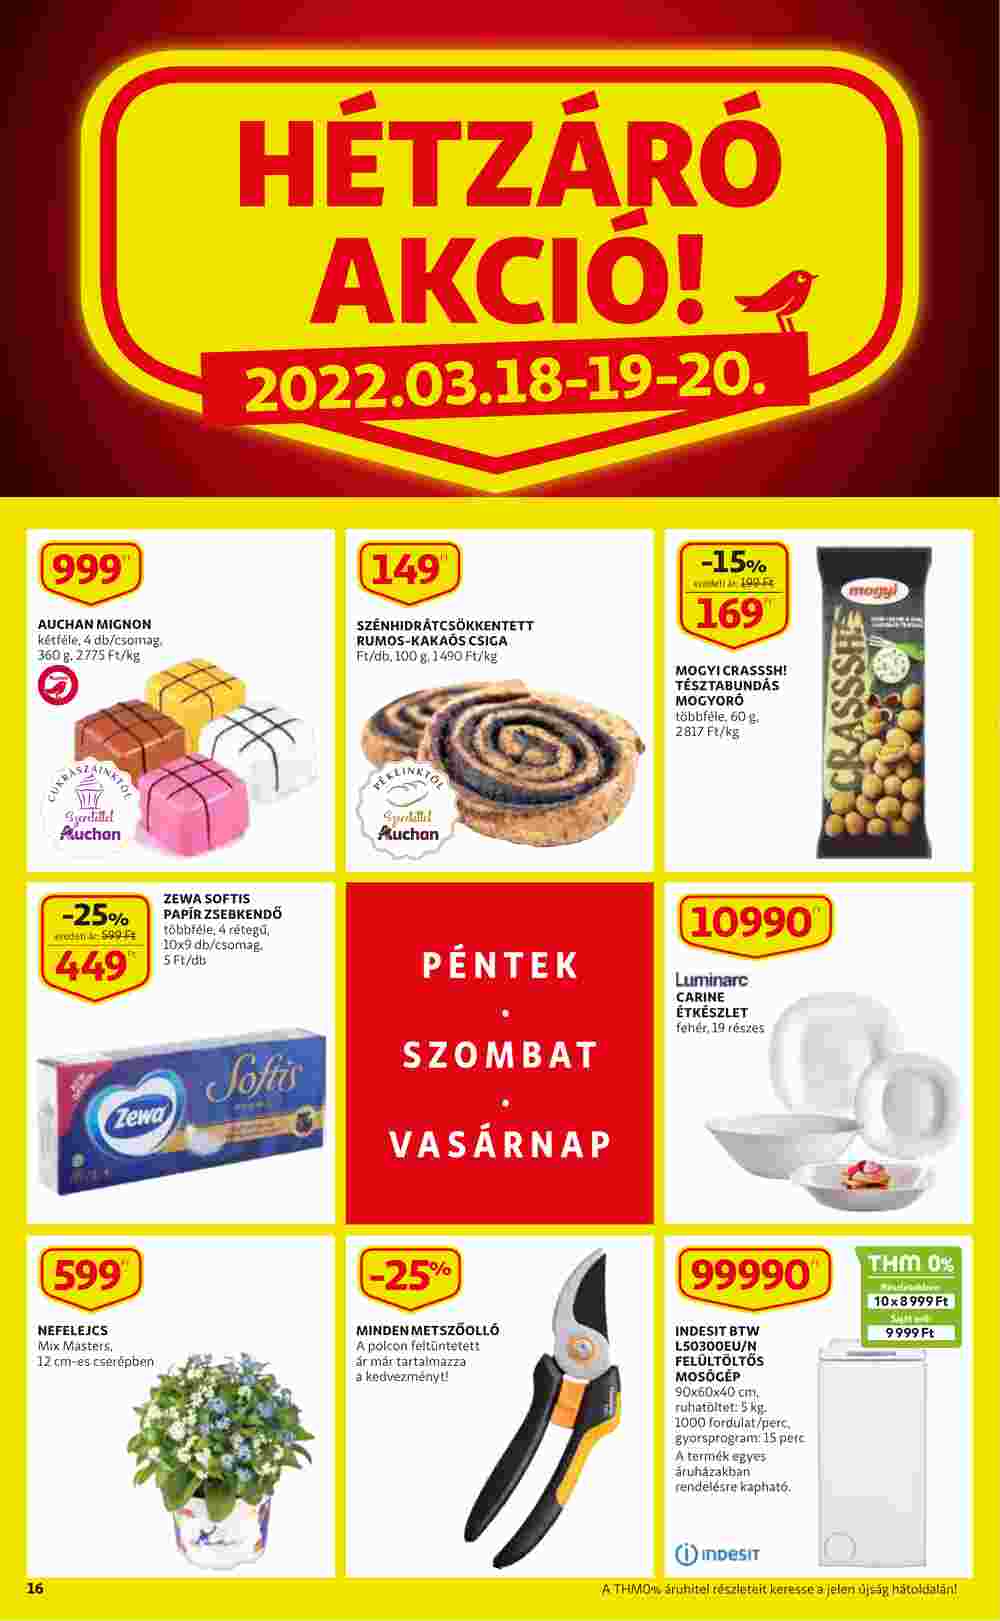 Auchan akciós újság 2022.03.17-től - 16. oldal.